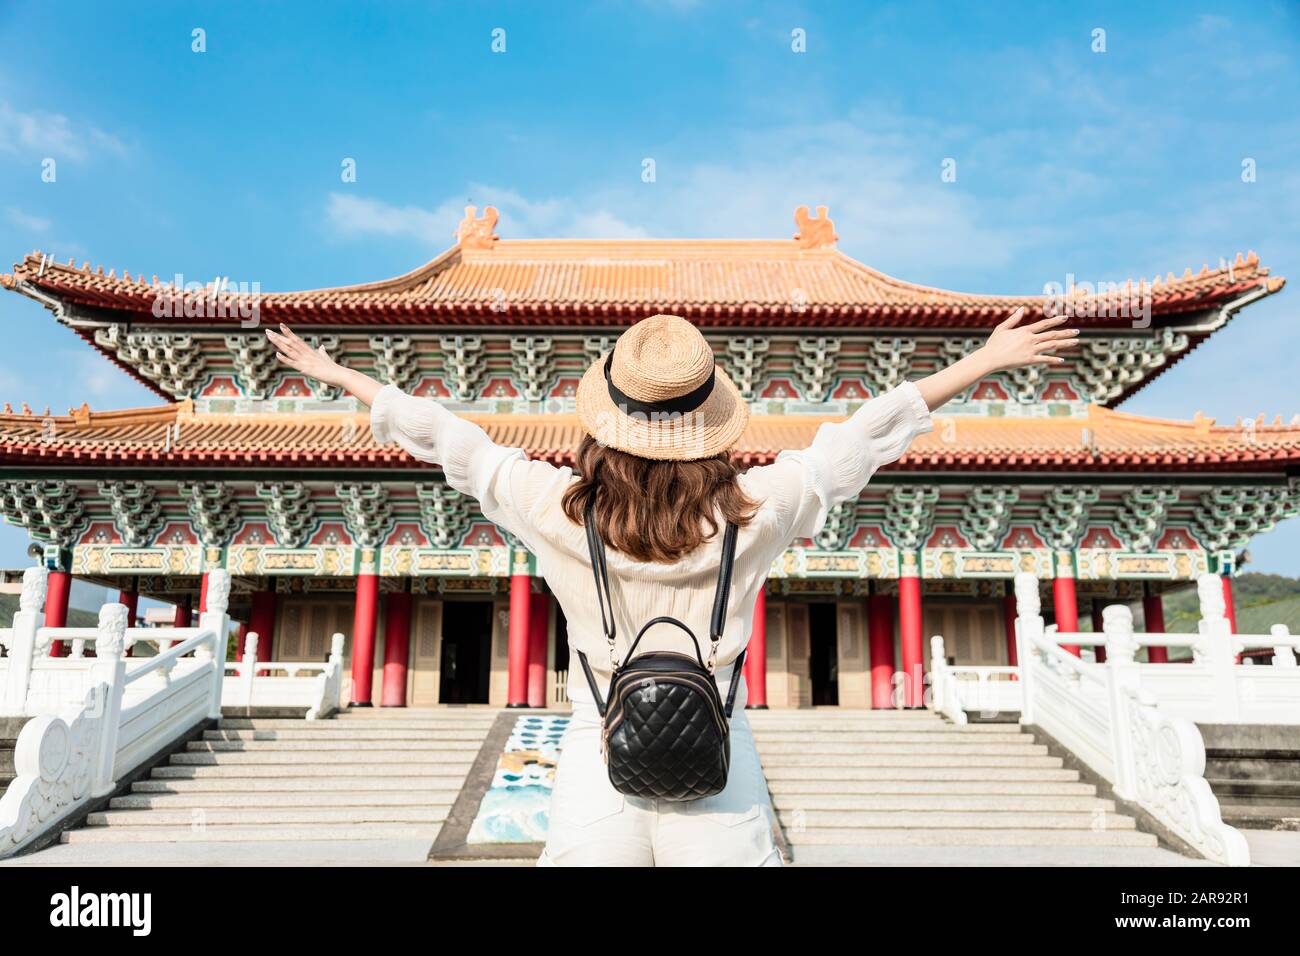 Une jeune femme routard se trouve devant le temple chinois traditionnel Banque D'Images